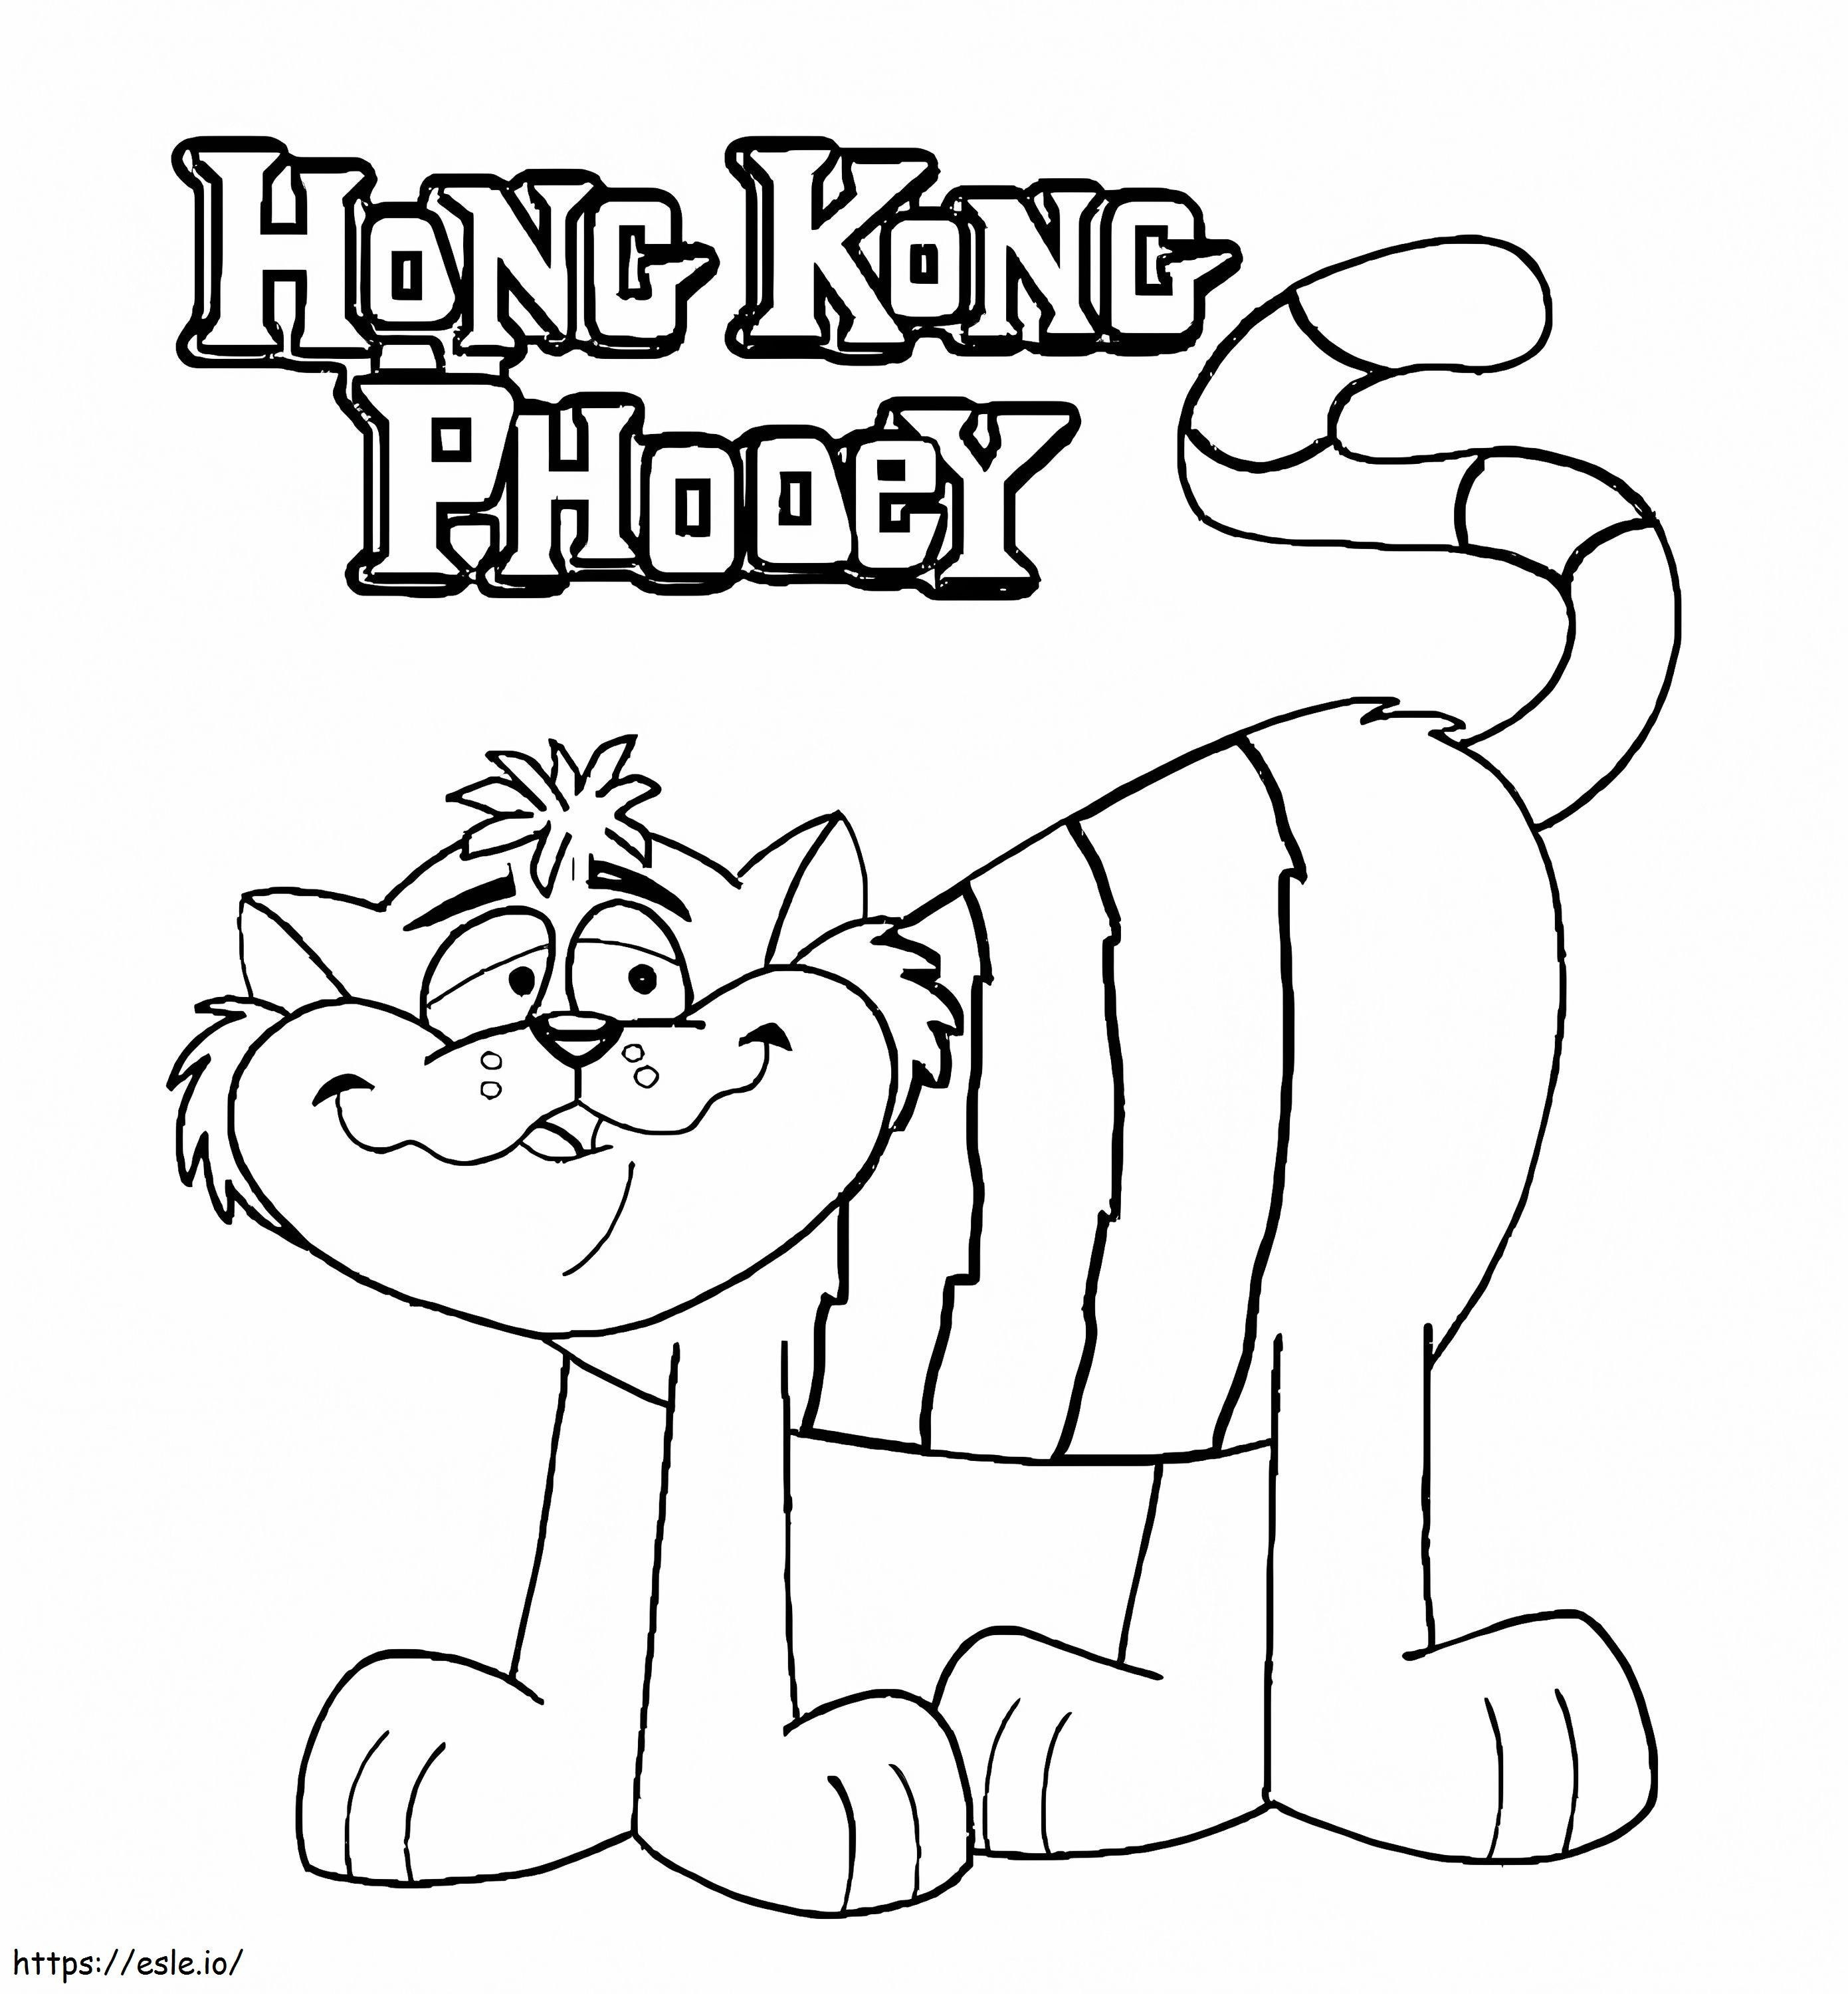 Entdecken Sie Hong Kong Phooey ausmalbilder